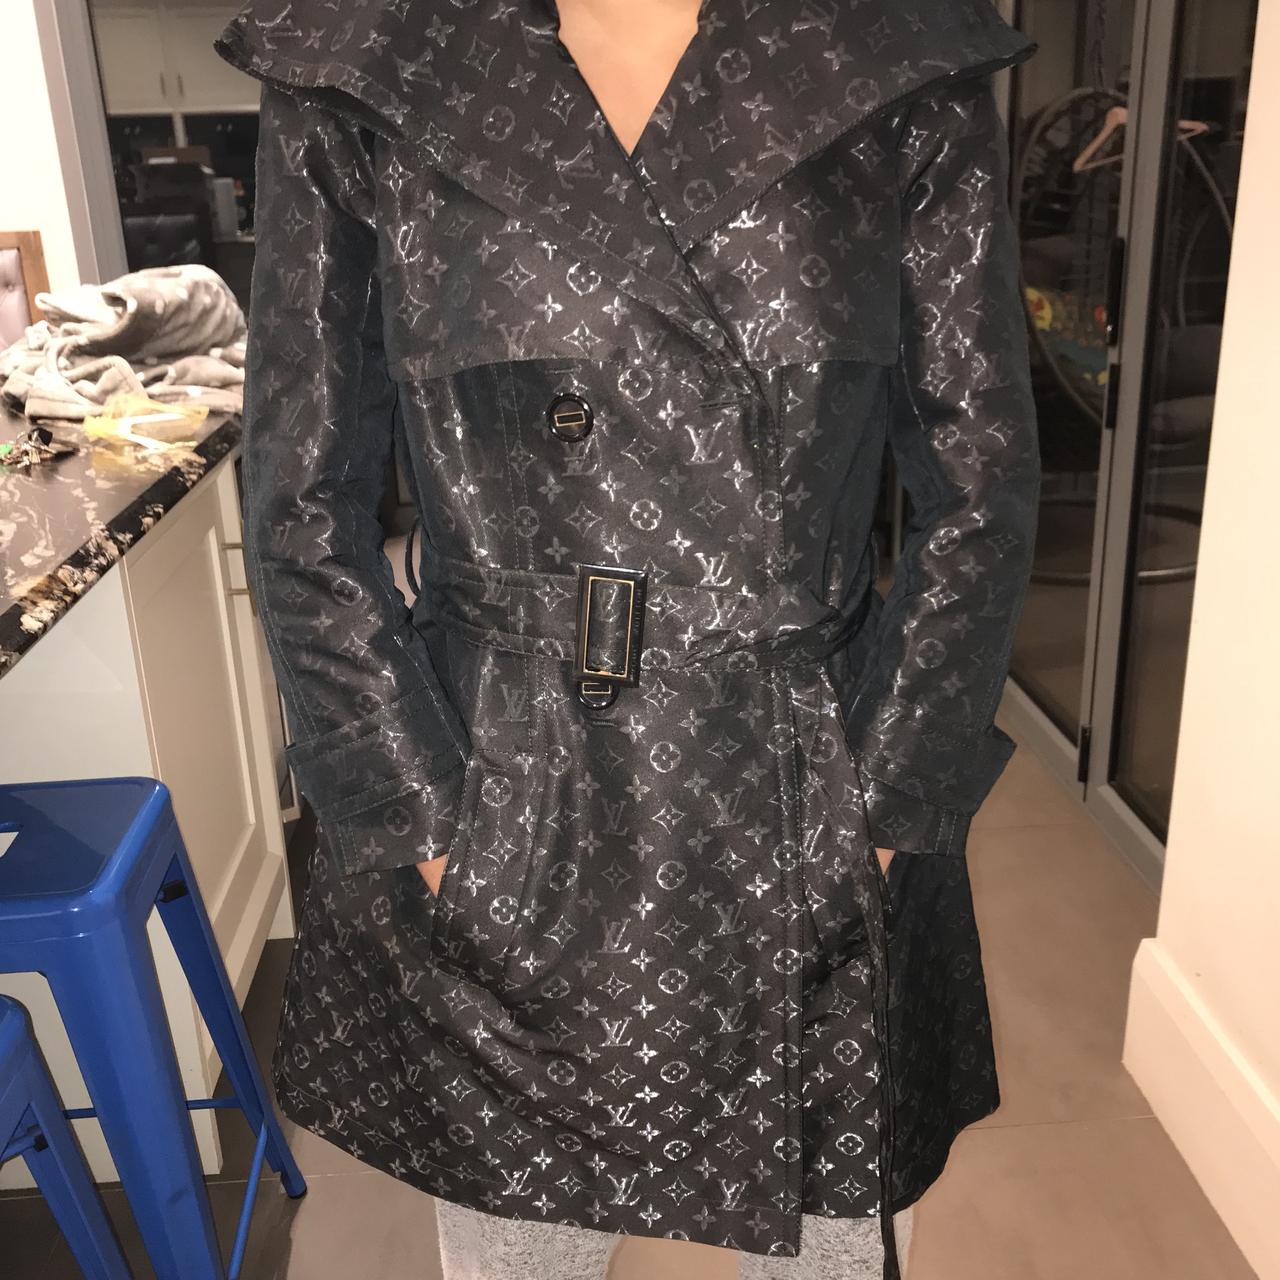 Women's, Louis Vuitton Trench Coats